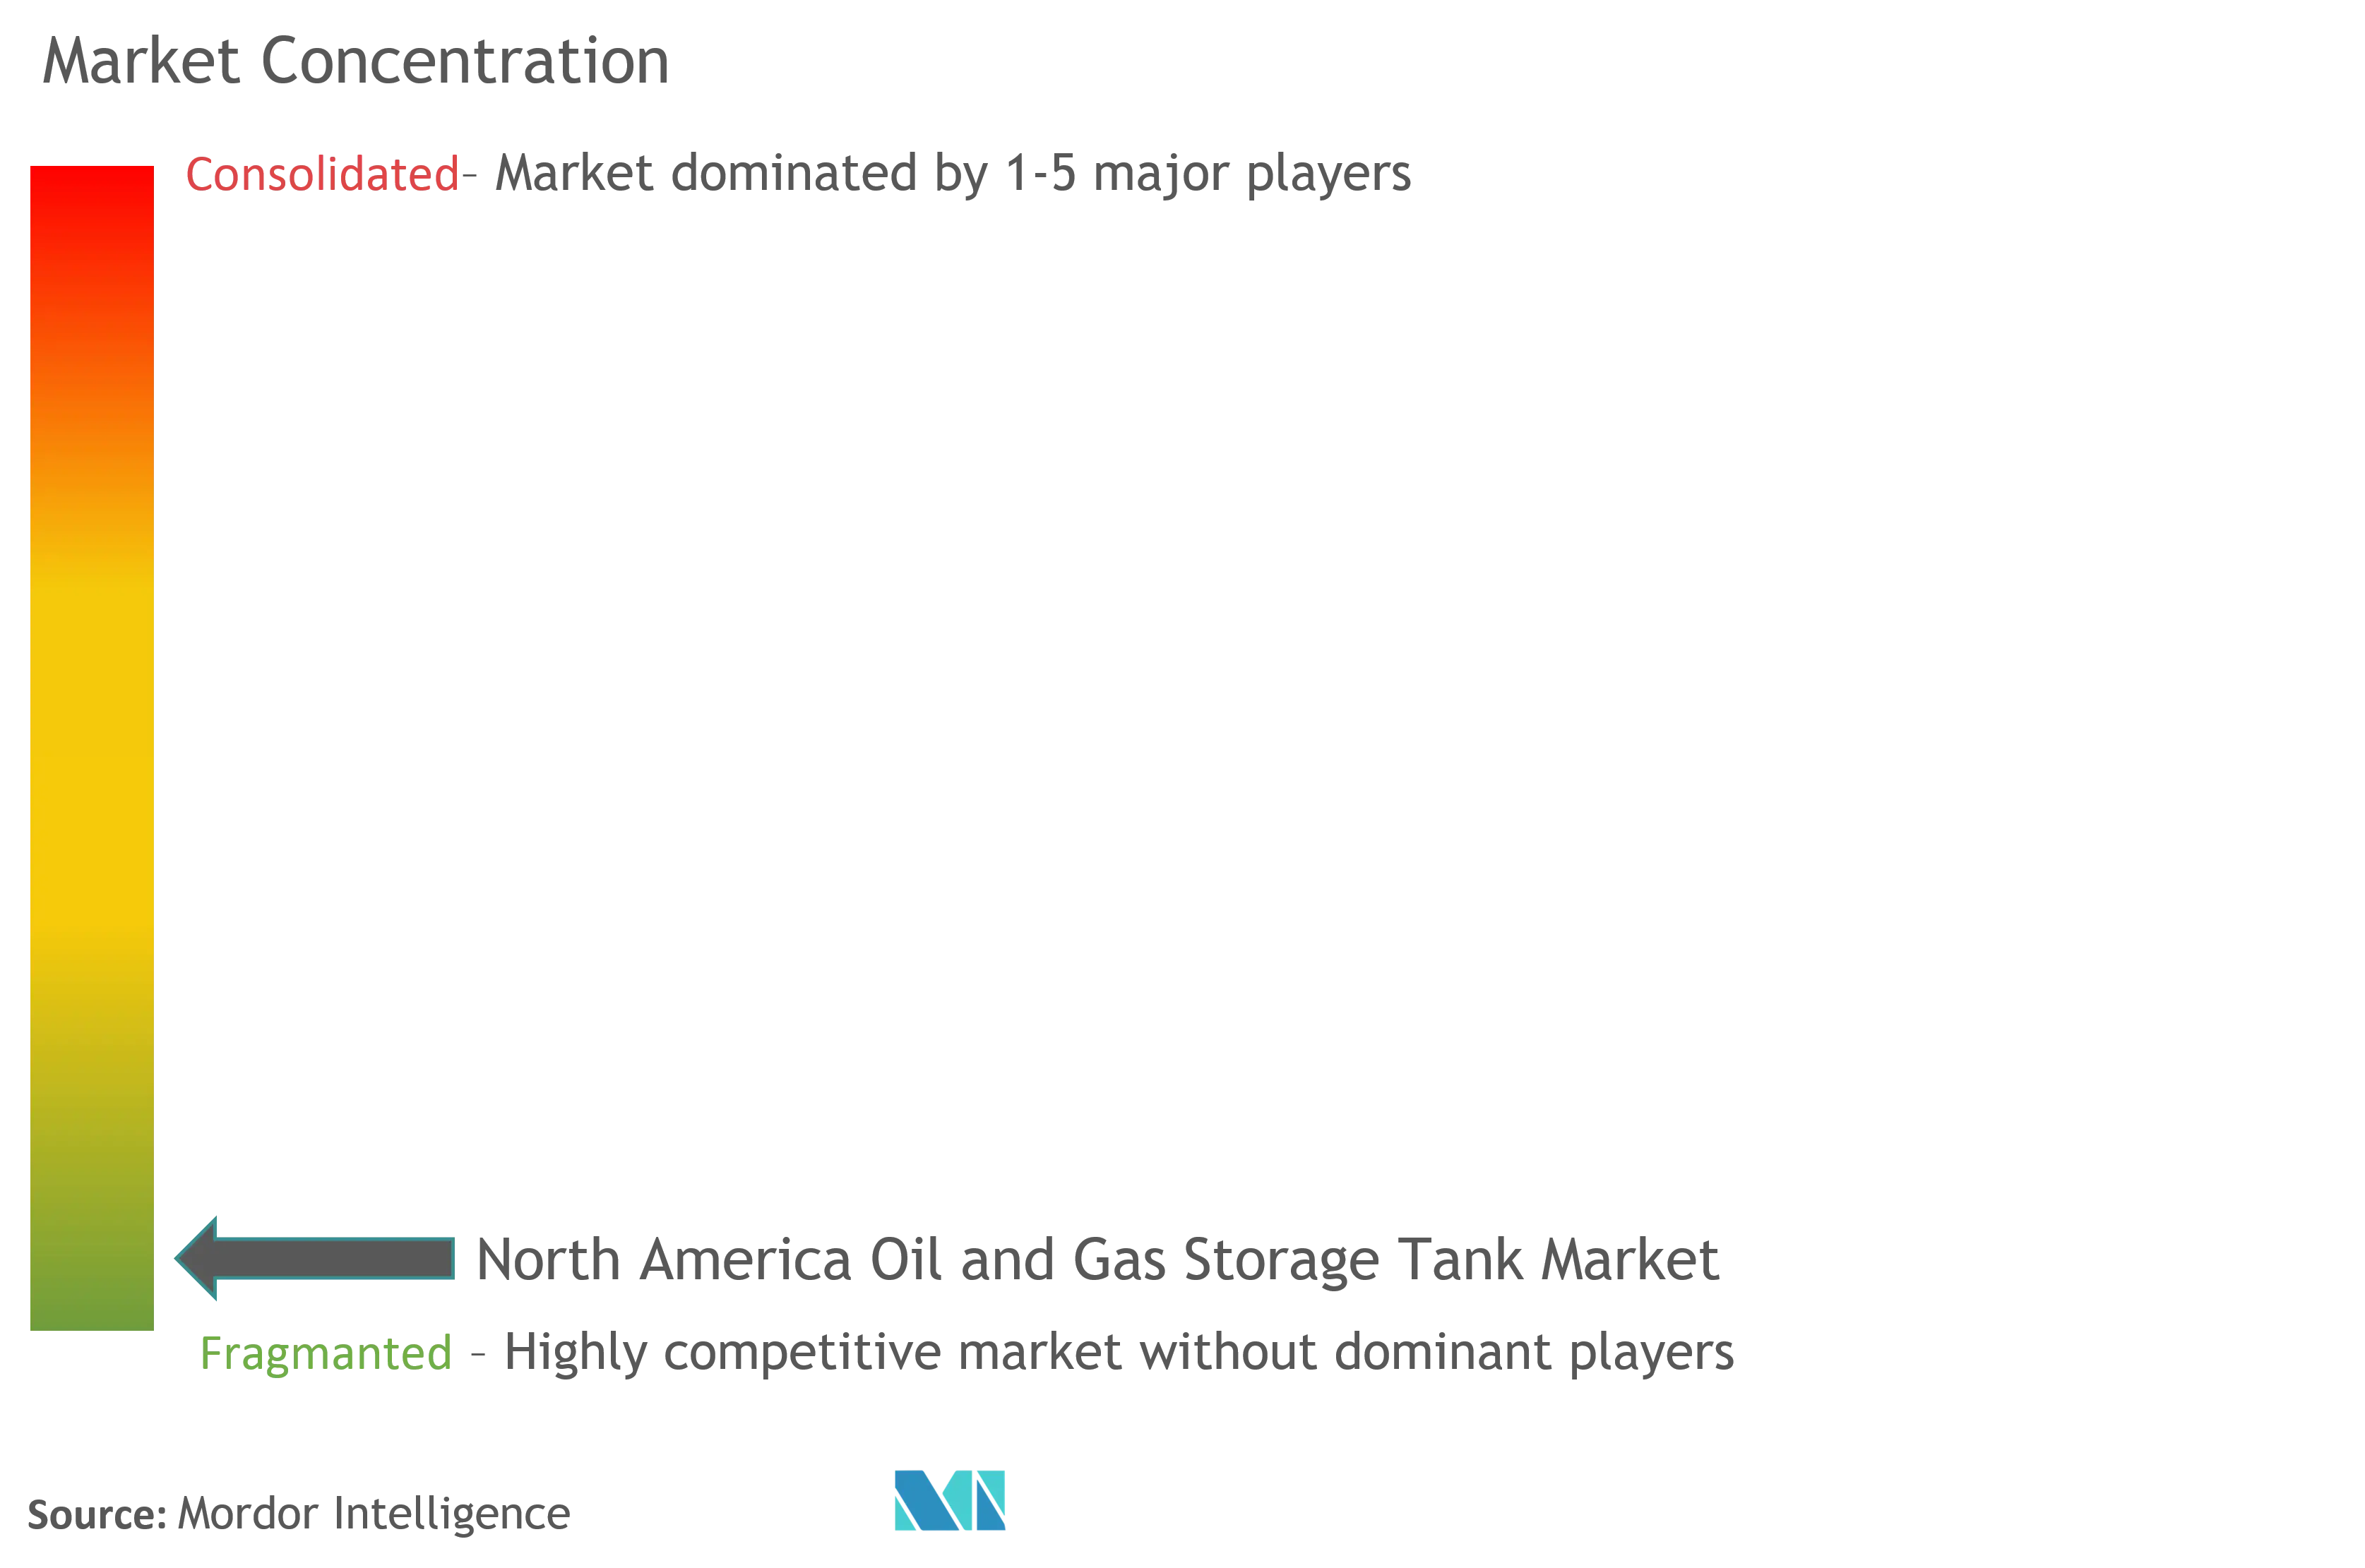 北米の石油およびガス貯蔵タンク市場集中度